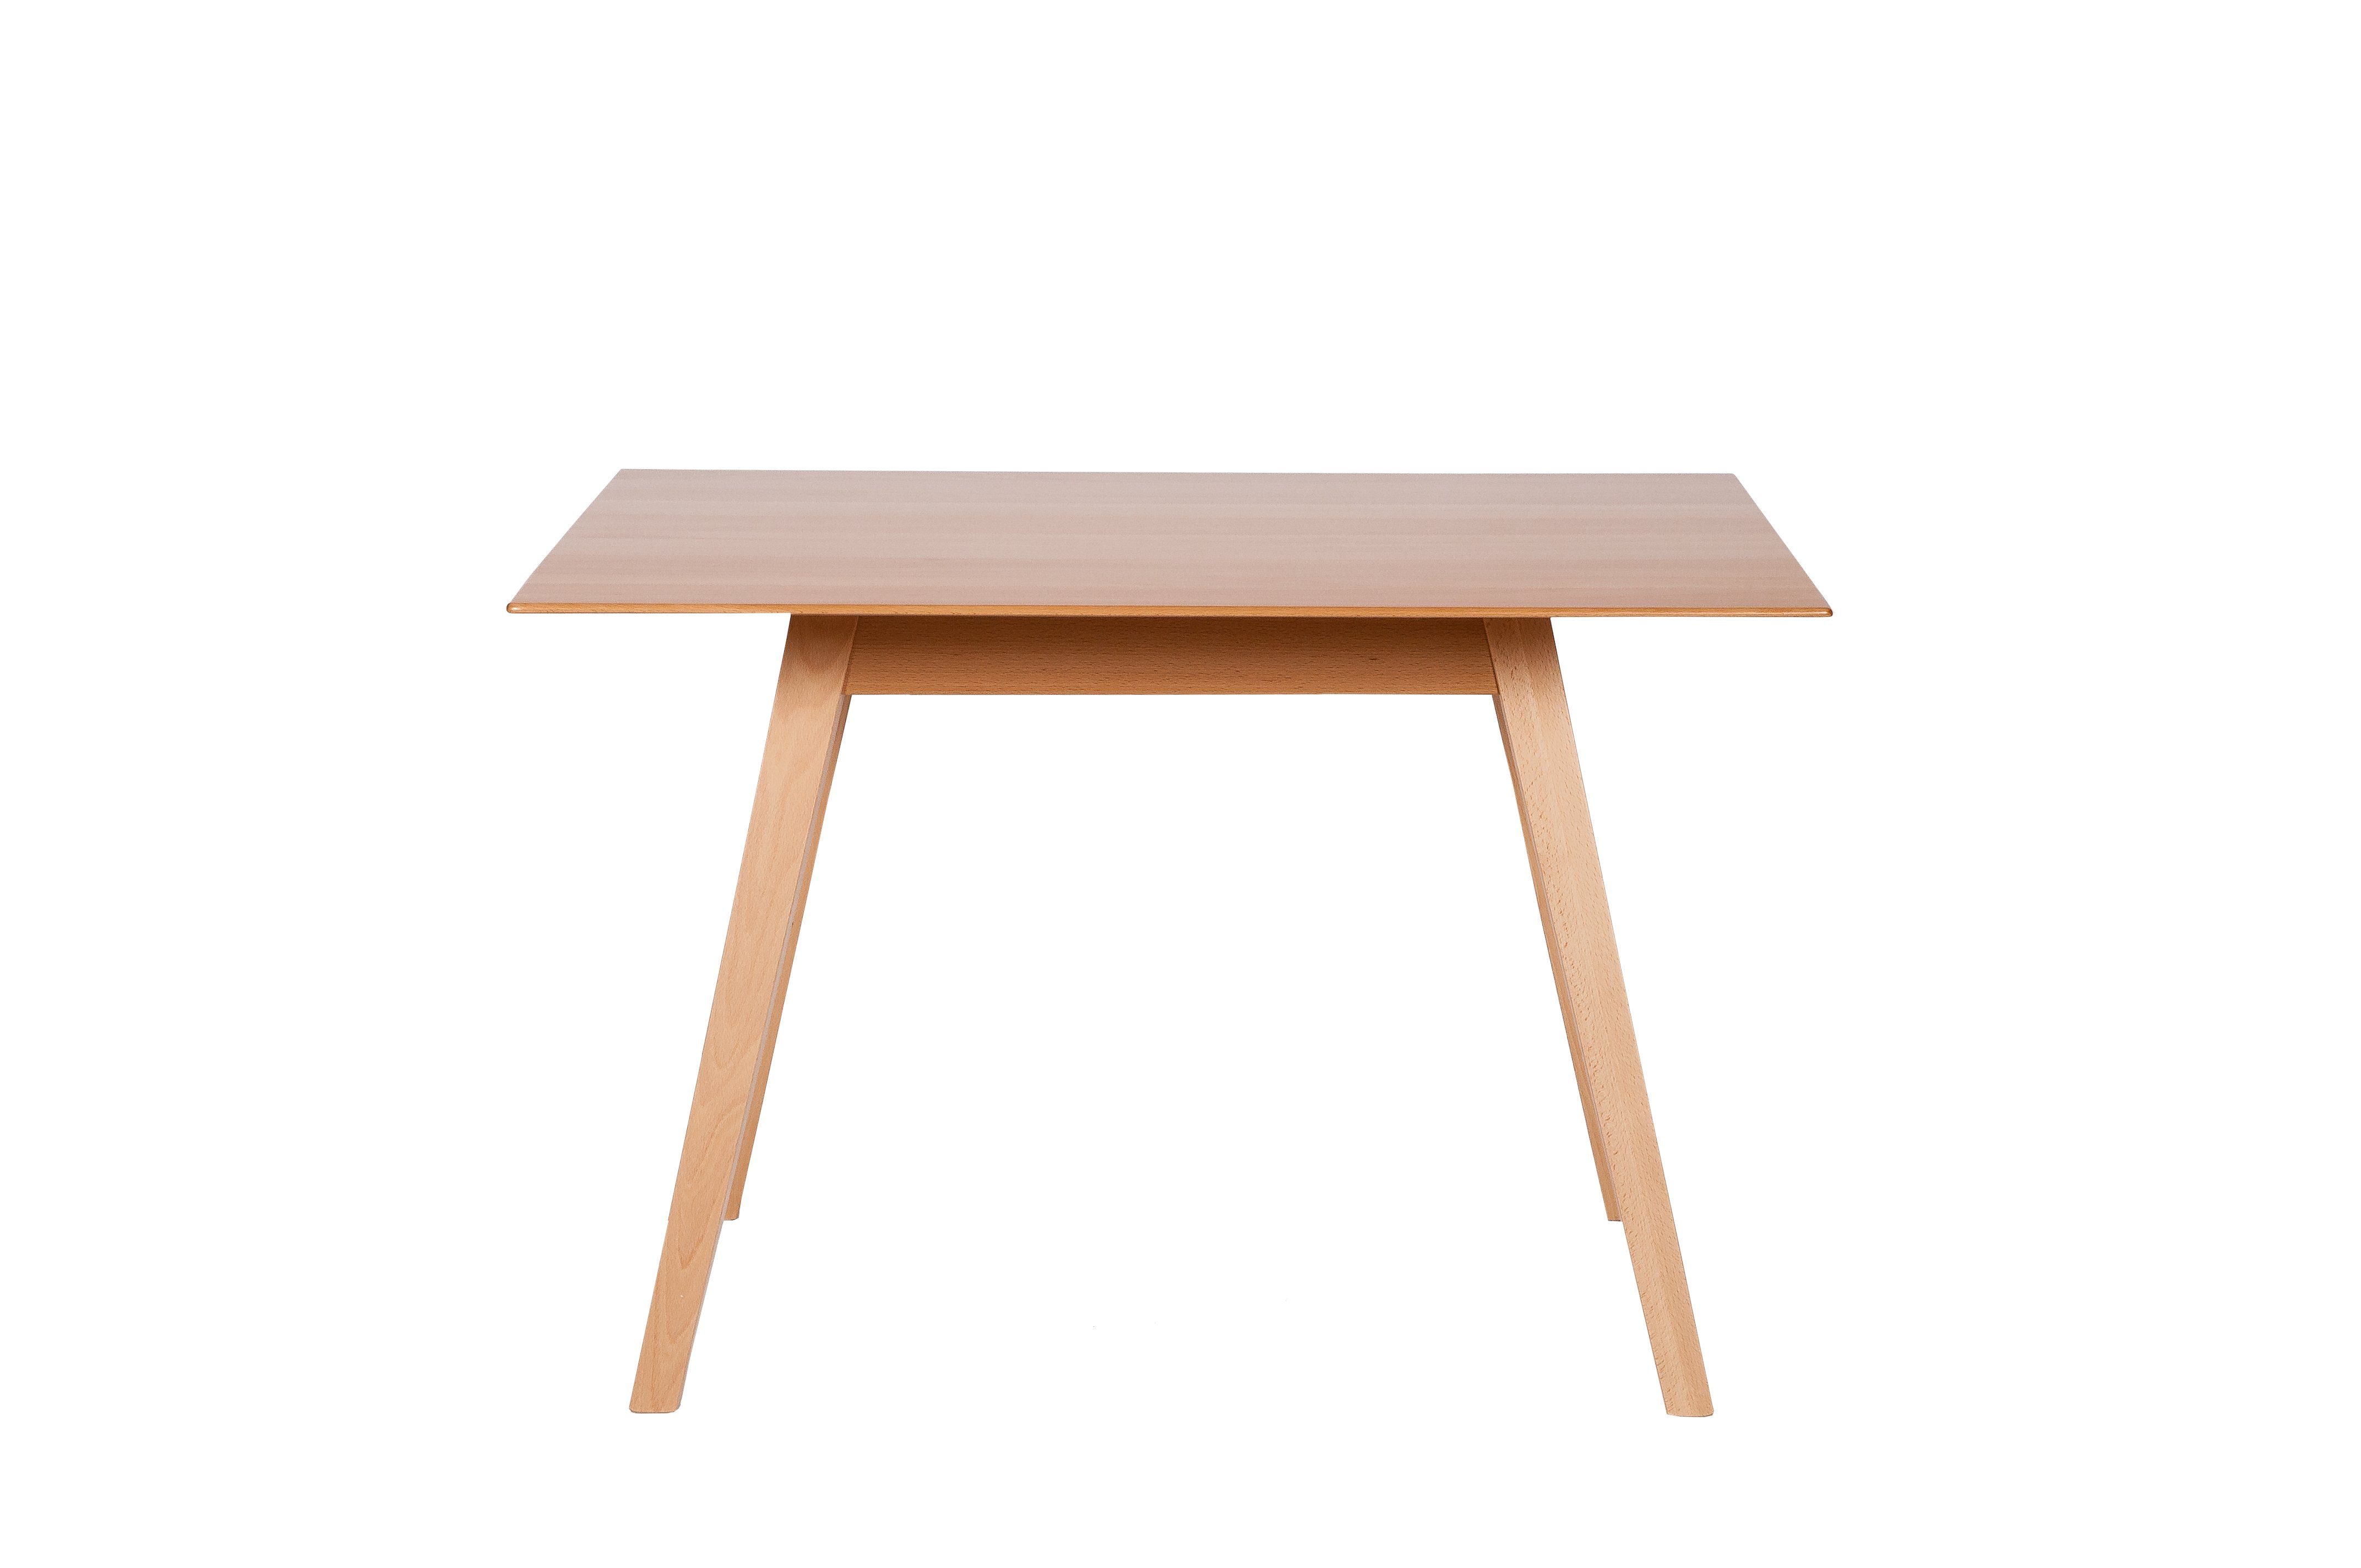 A+ Tisch in Küchentisch, Lamellen Massivholz, durchgehenden Massivholz kundler Qualität Buche Natürliche', 'Der home Tischplatte Buche mit Esstisch 110x75cm,